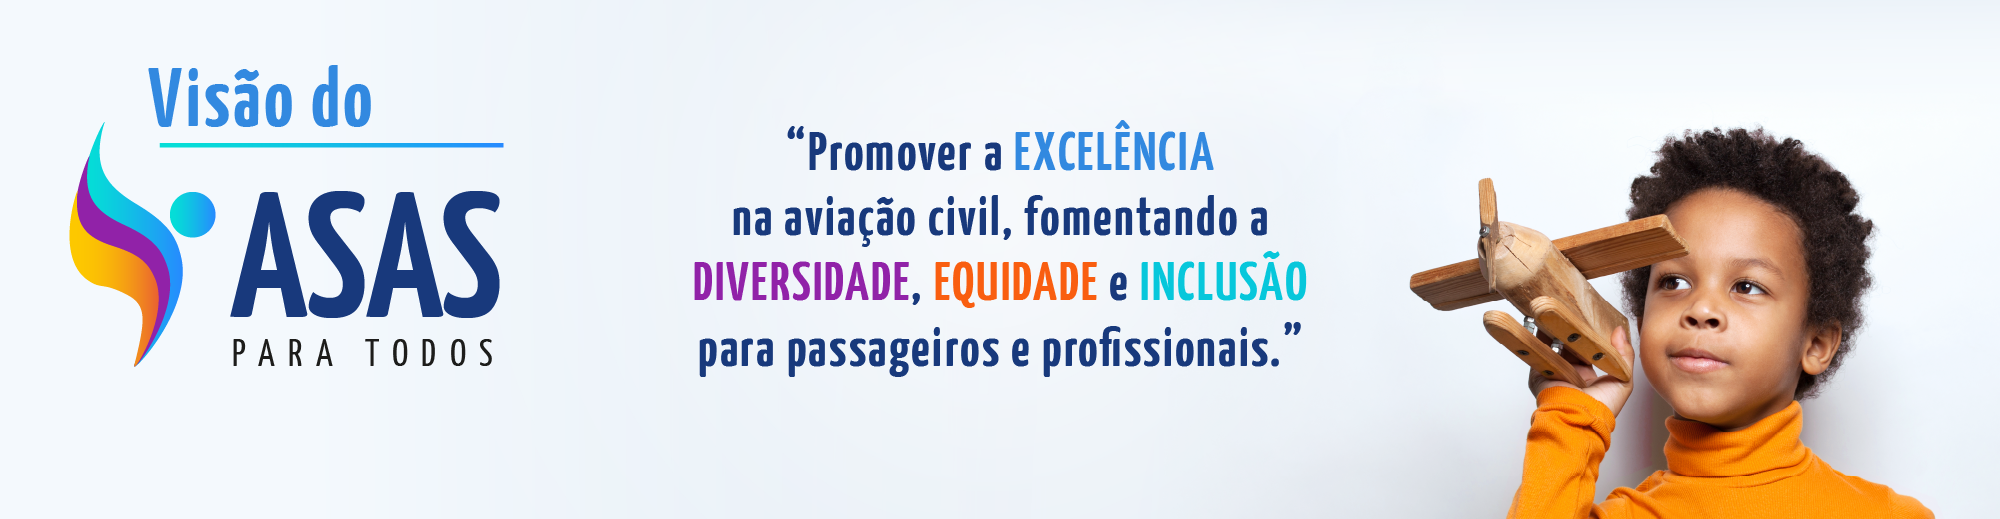 Visão do Asas para Todos: promover a excelência na aviação civil, fomentando a diversidade, equidade e inclusão para passageiros e profissionais.